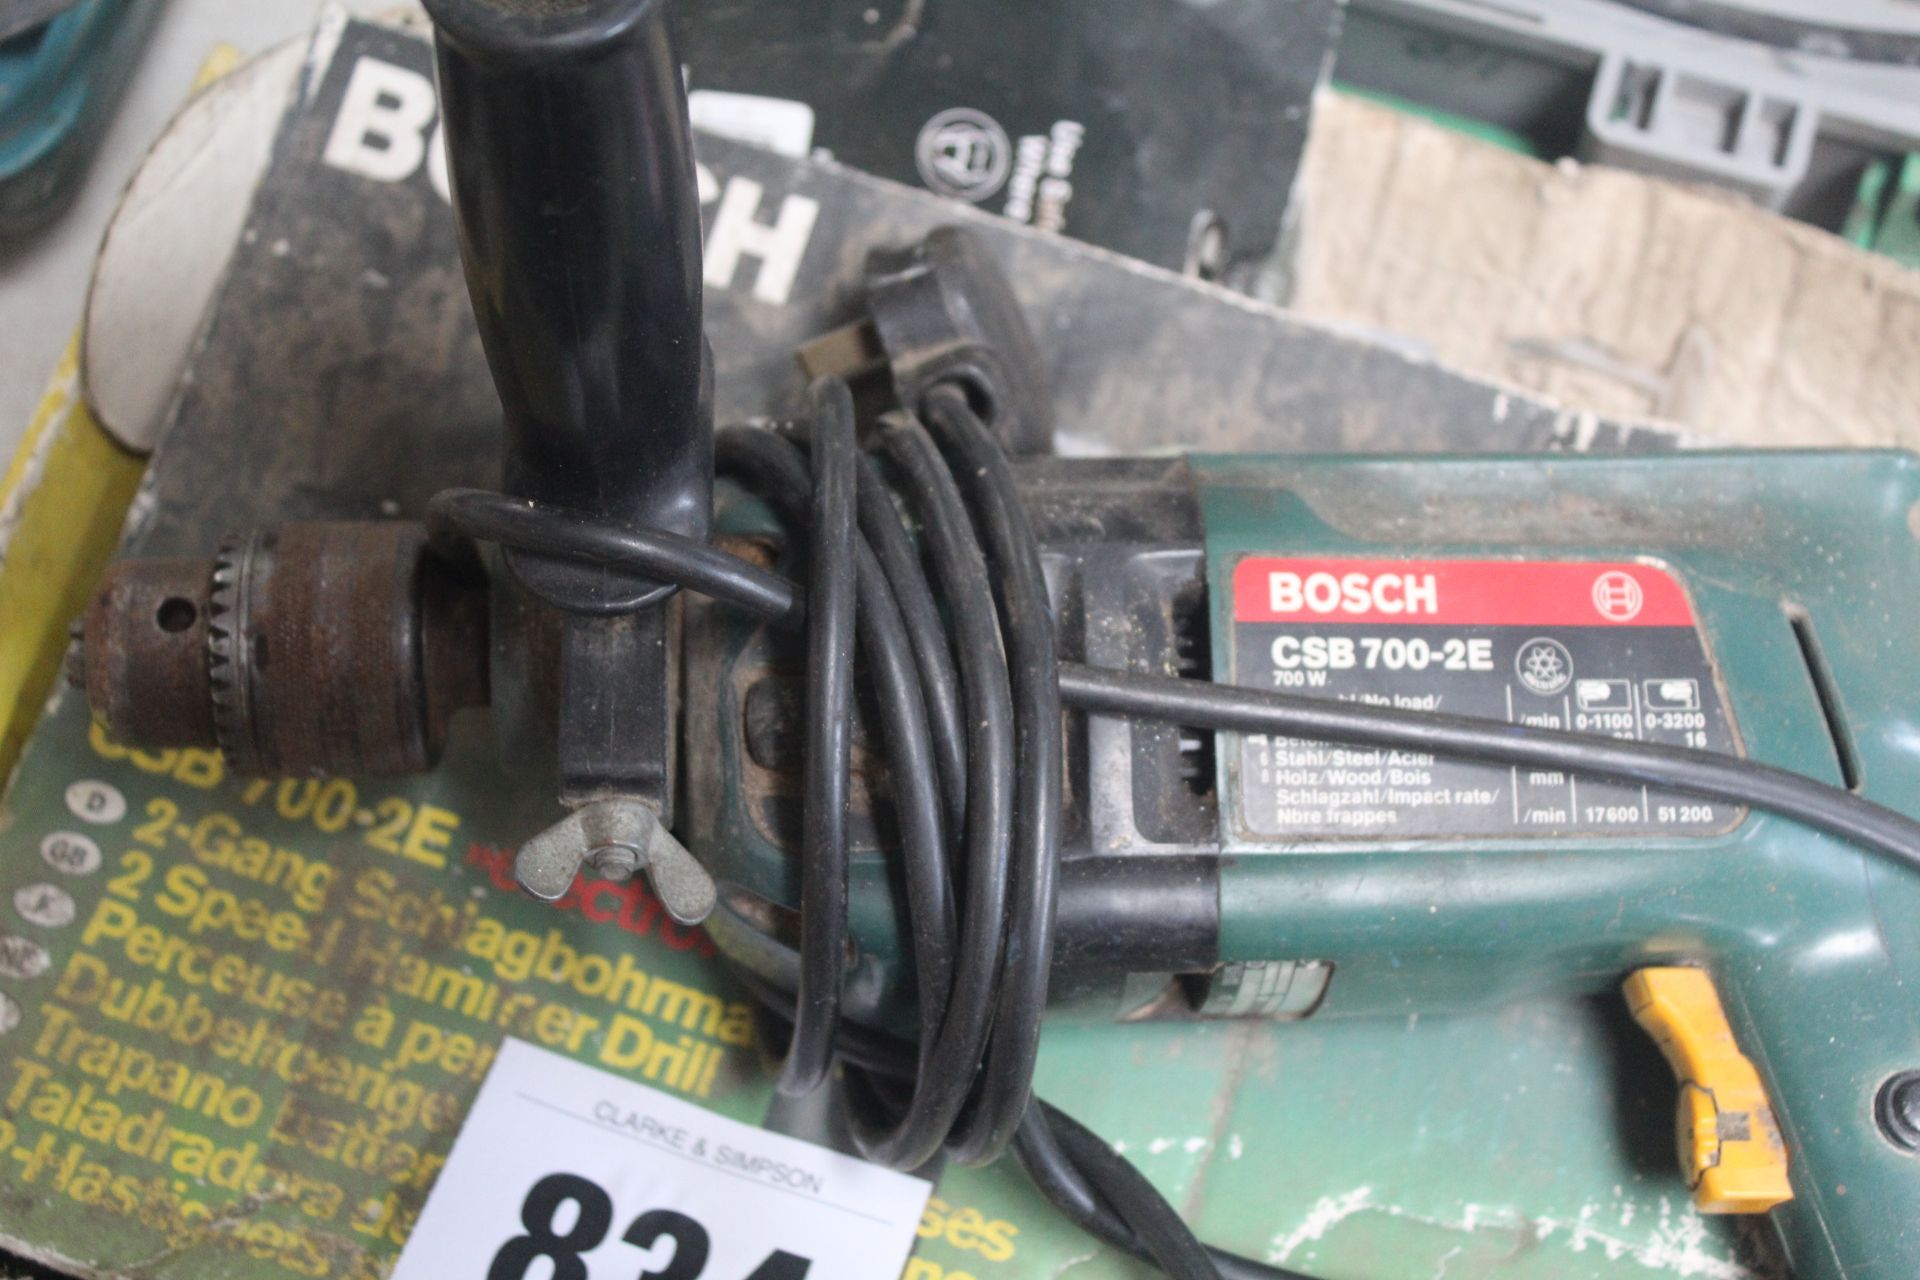 Bosch 240v drill. - Image 2 of 4